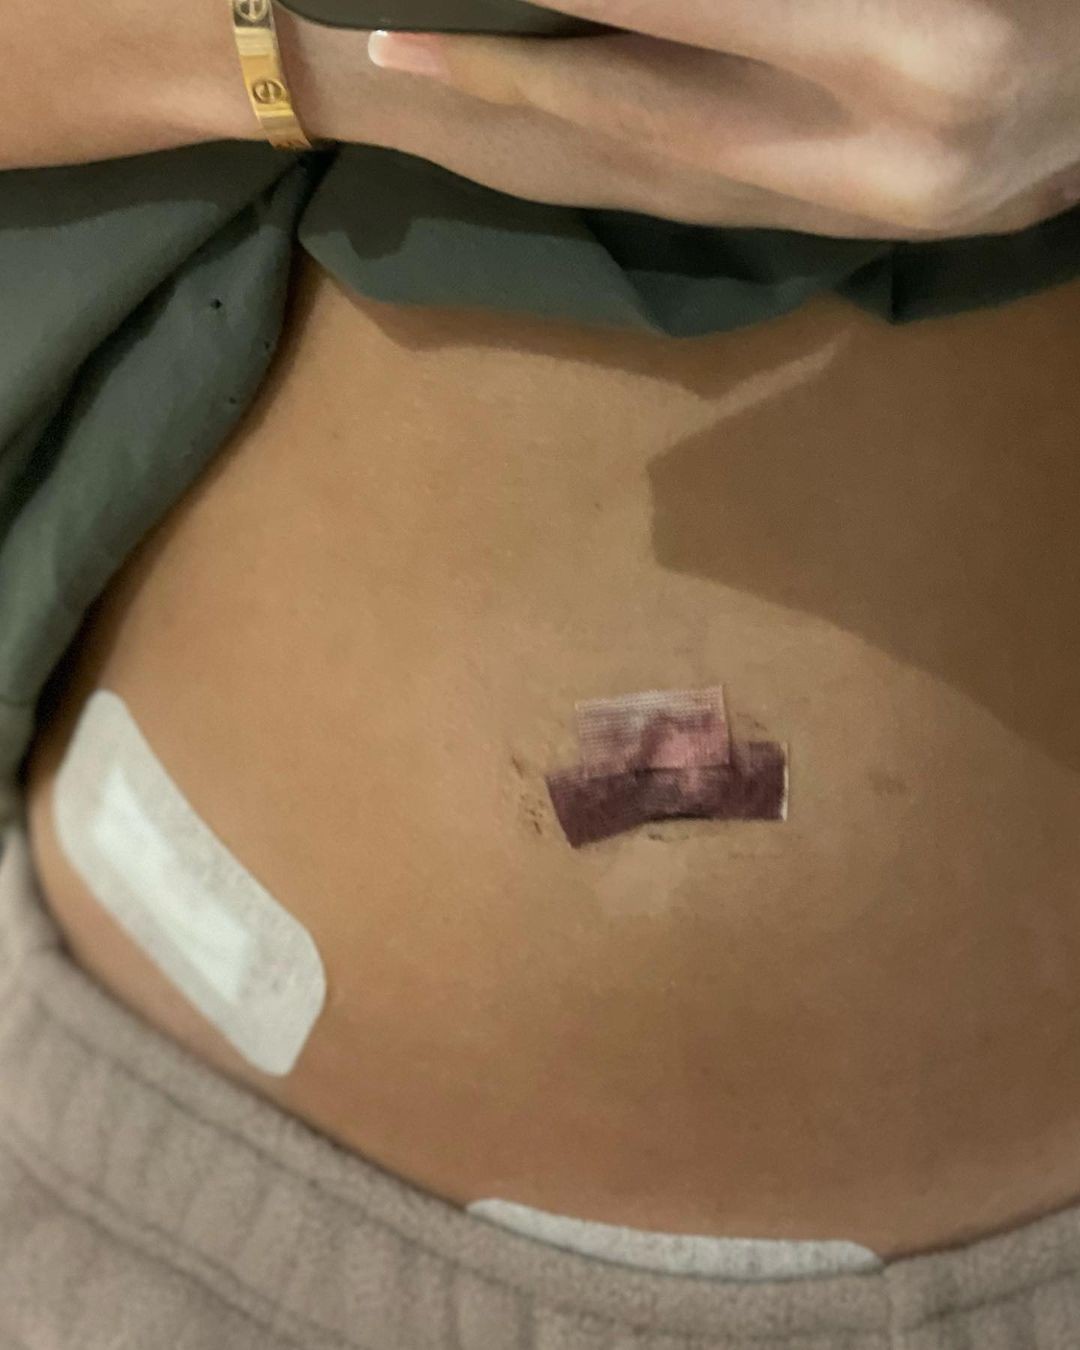 Thylane Blondeau undergoes surgery (Image: Engage/Instagram)